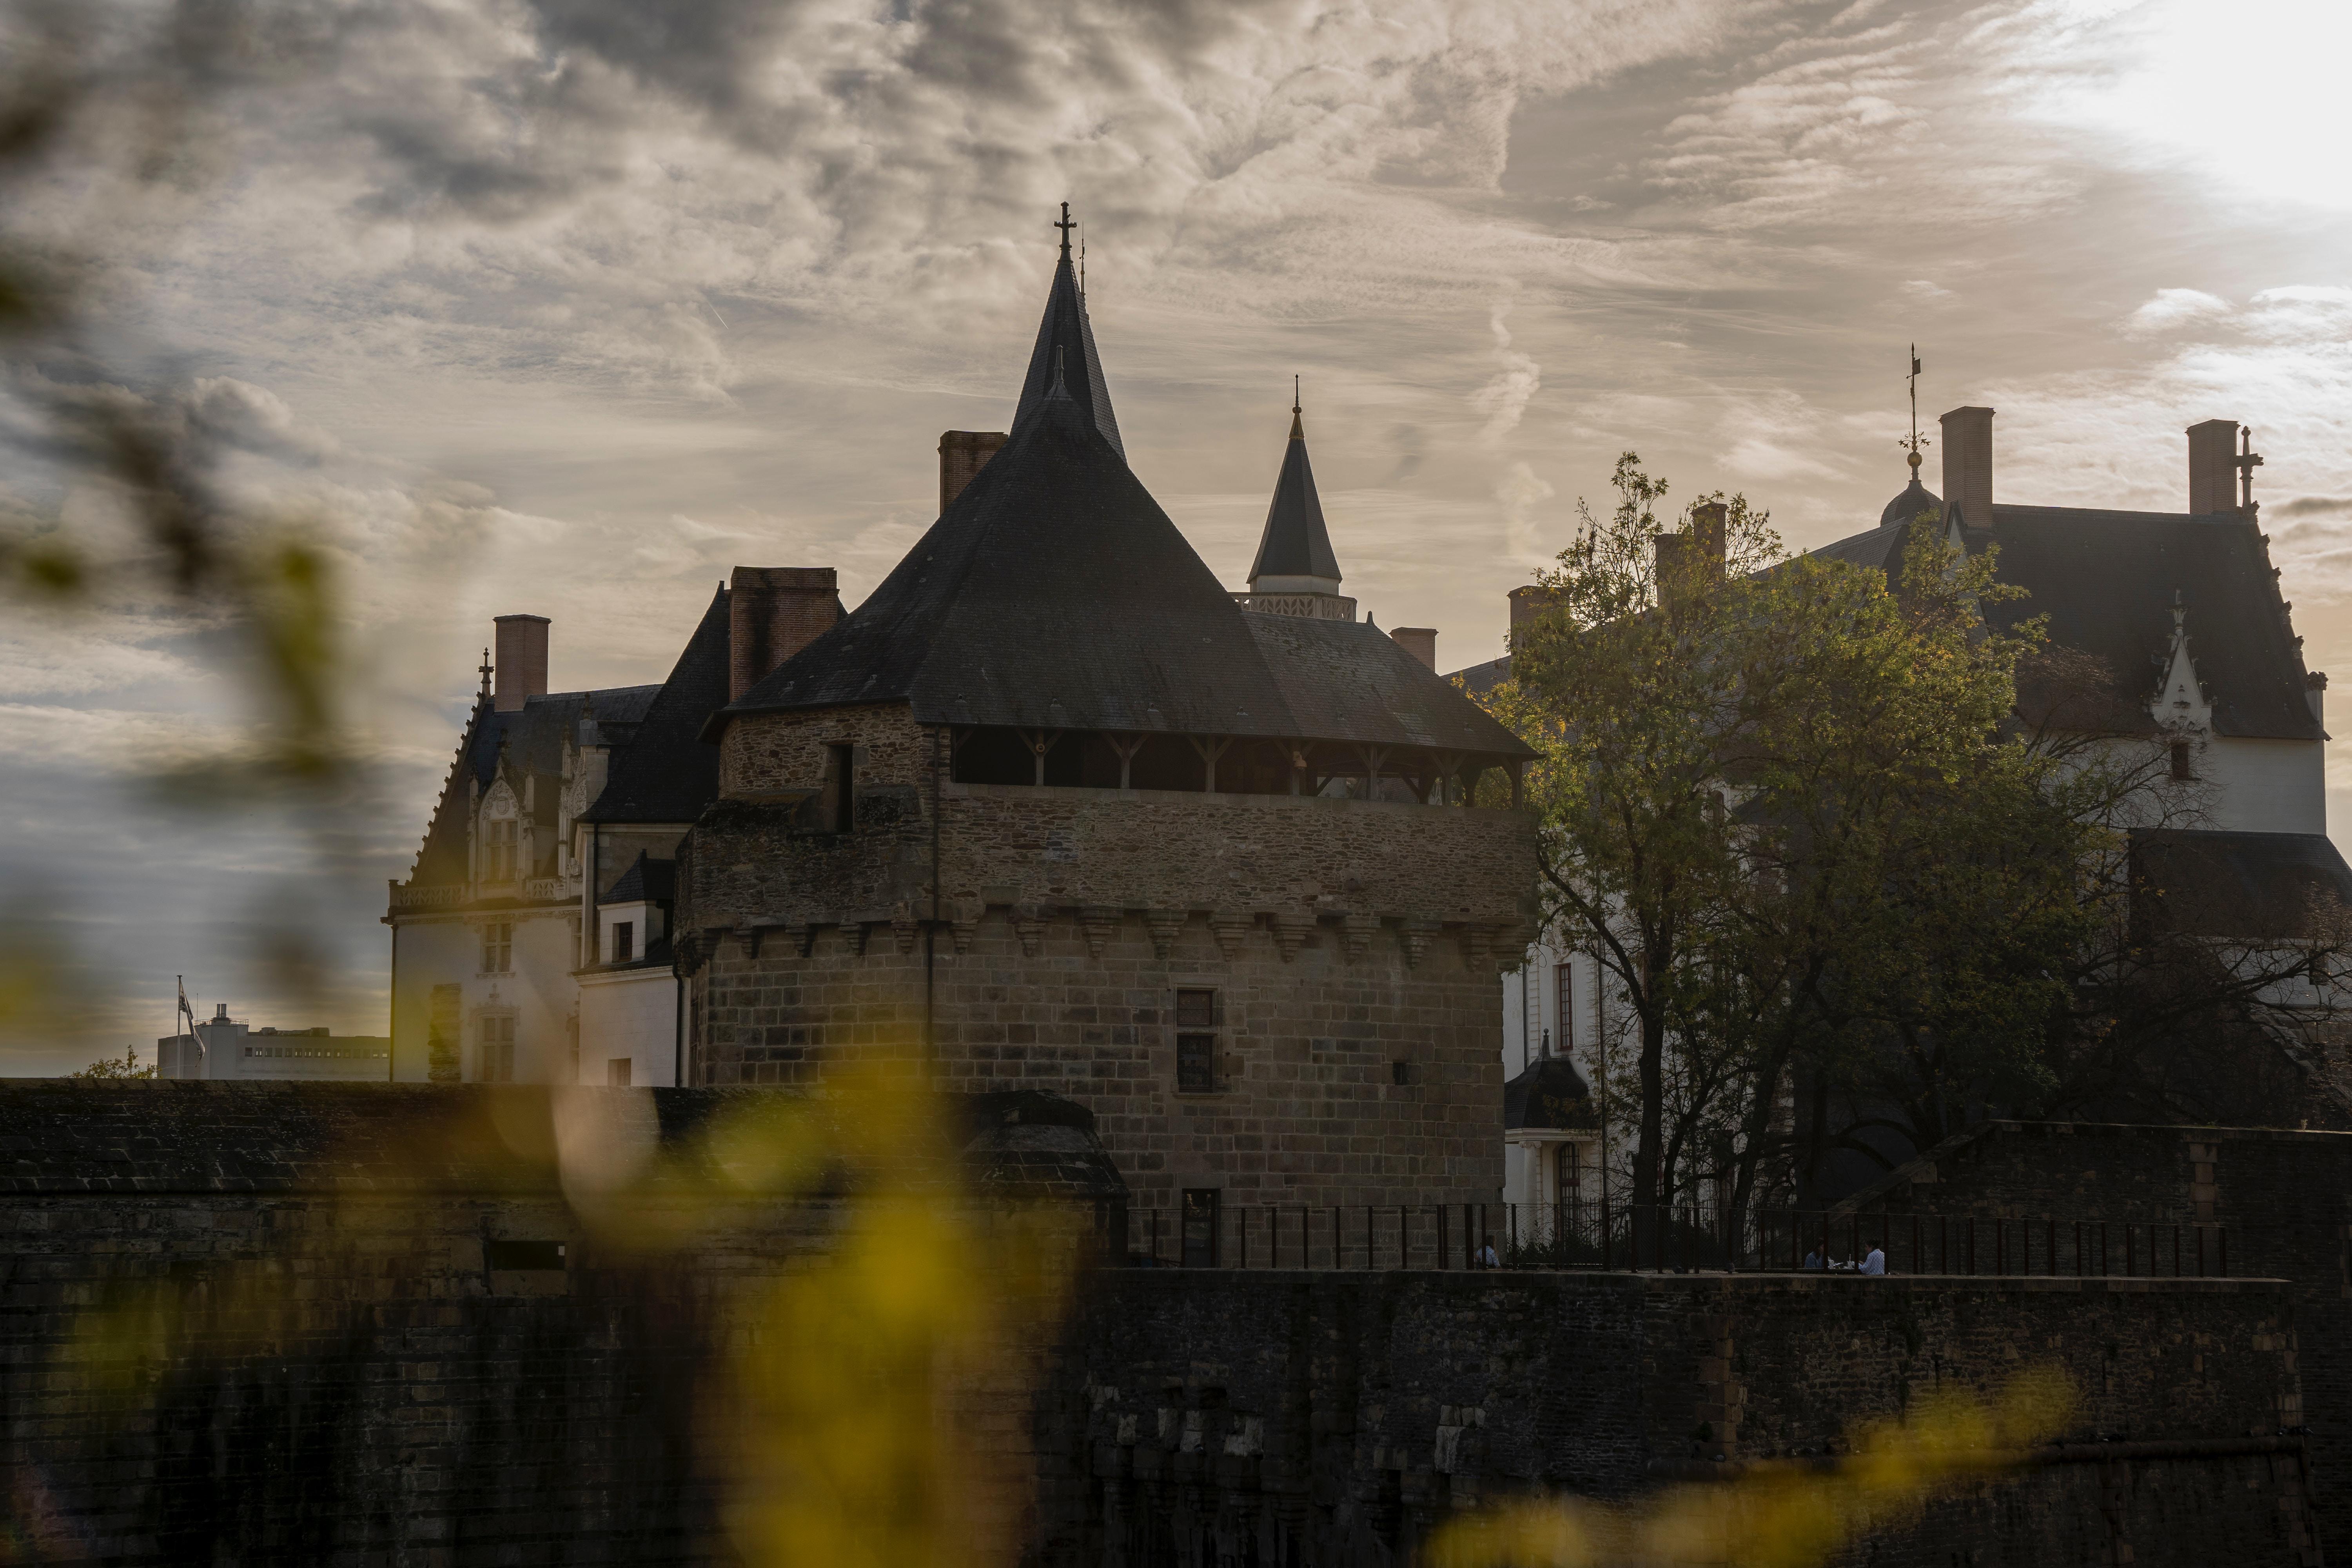 Le château des ducs de Bretagne à Nantes